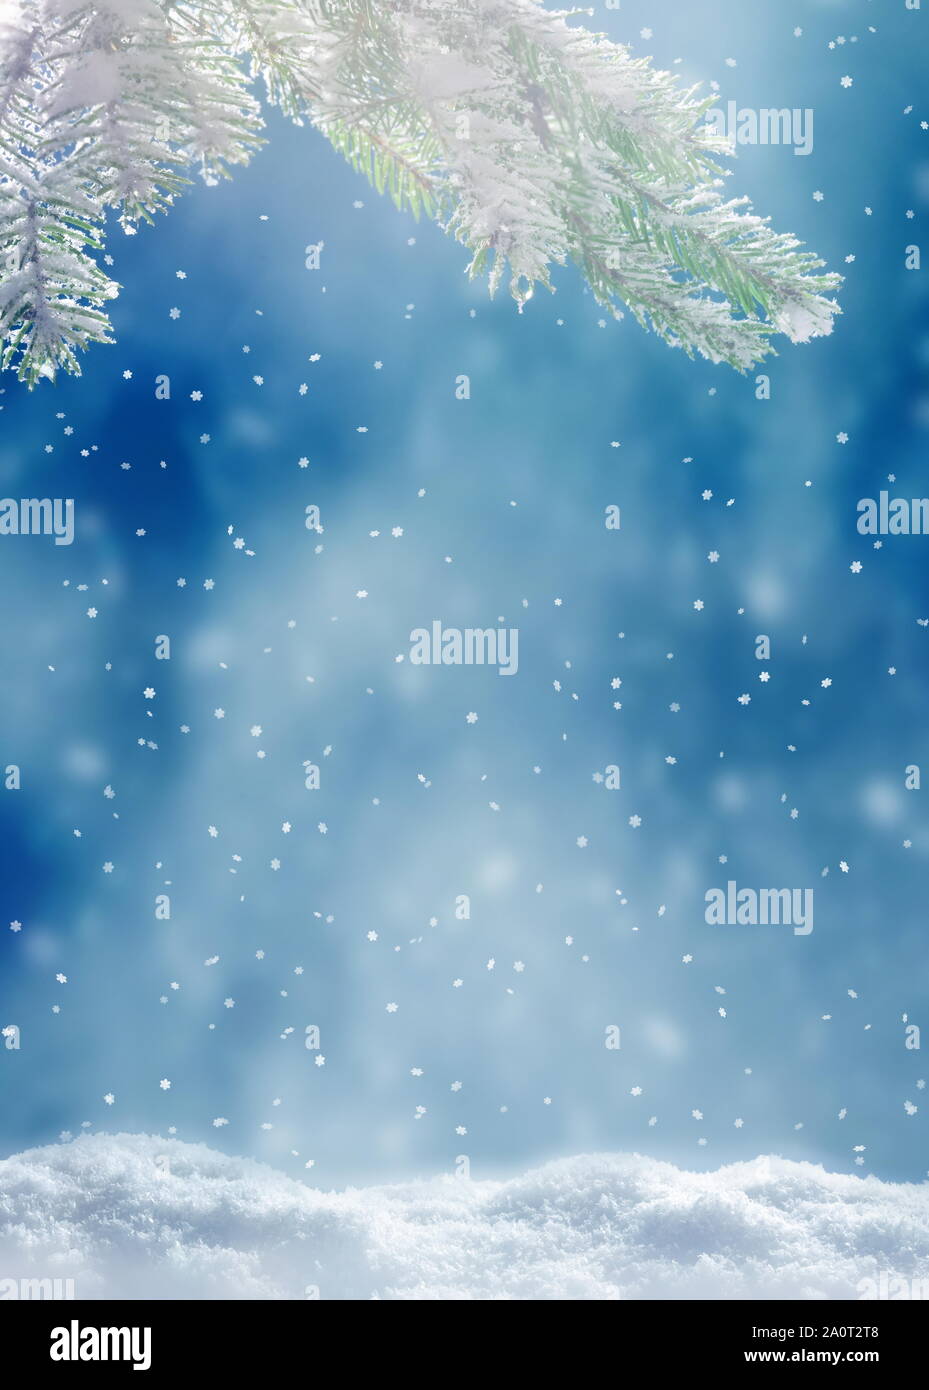 Beau paysage d'hiver enneigé avec une branche de sapin enneigées, des flocons de neige et ciel bleu. Noël arrière-plan d'hiver. Concept d'hiver. Banque D'Images